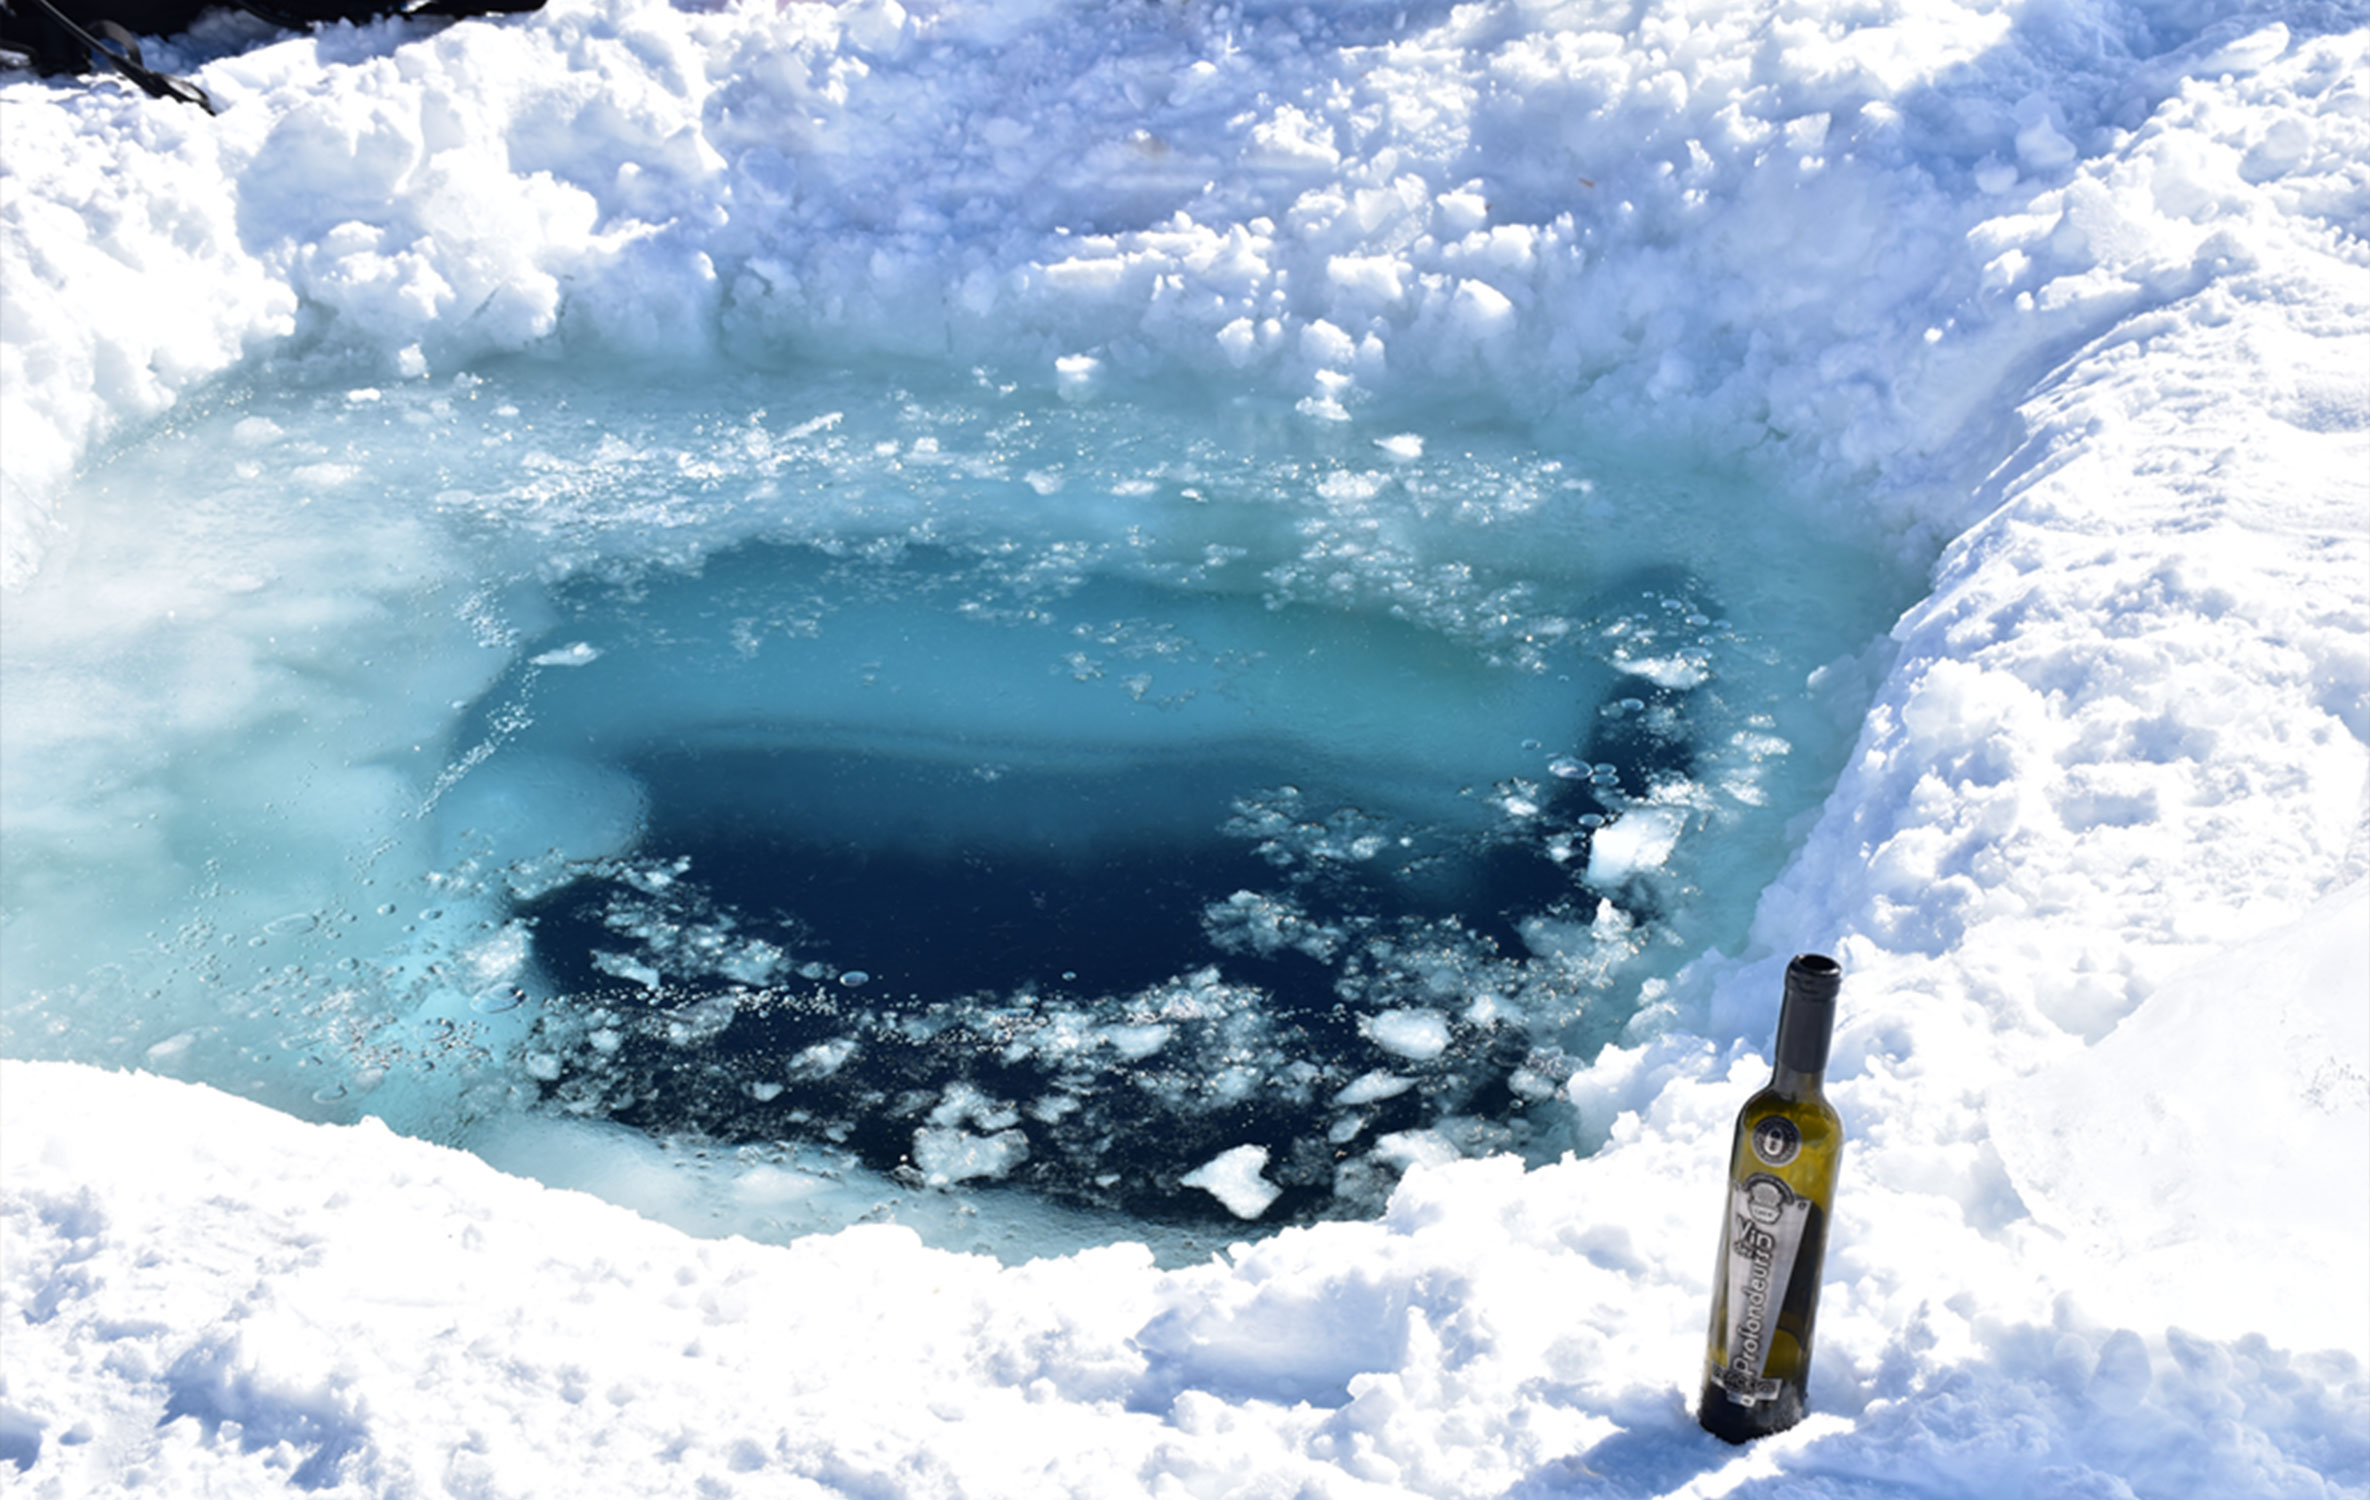 Le Vin des Profondeurs de Perceval de retour de sous la glace - Crédit photo : domaine Perceval